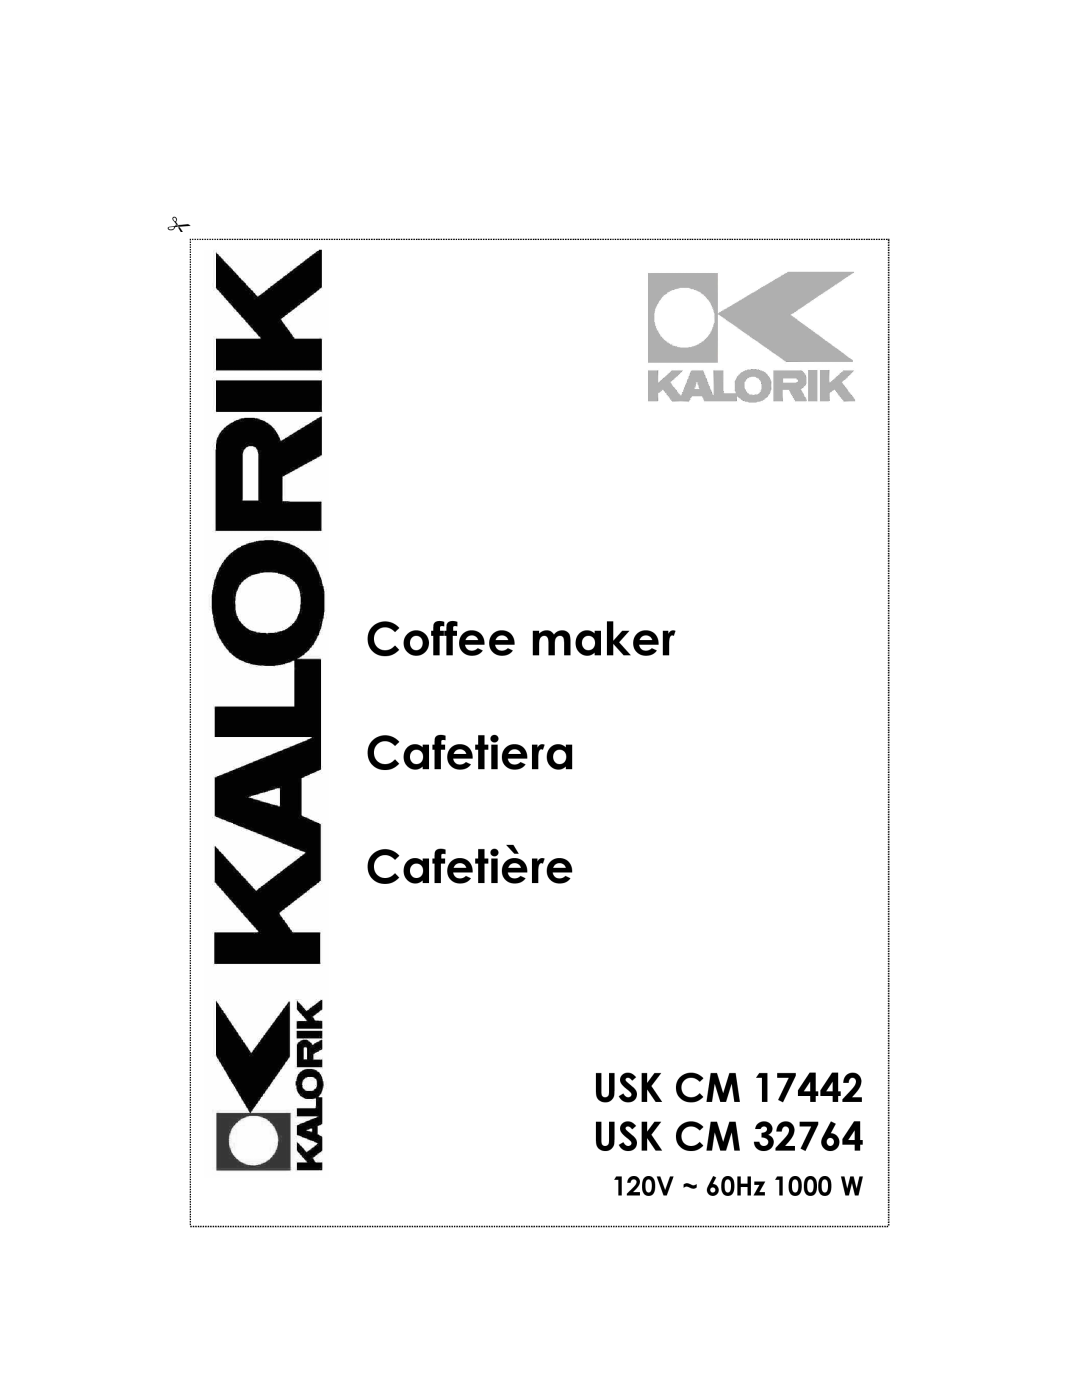 Kalorik USK CM 32764, USK CM 17442 manual Usk Cm Usk Cm, 120V ~ 60Hz 1000 W, Coffee maker Cafetiera Cafetière 